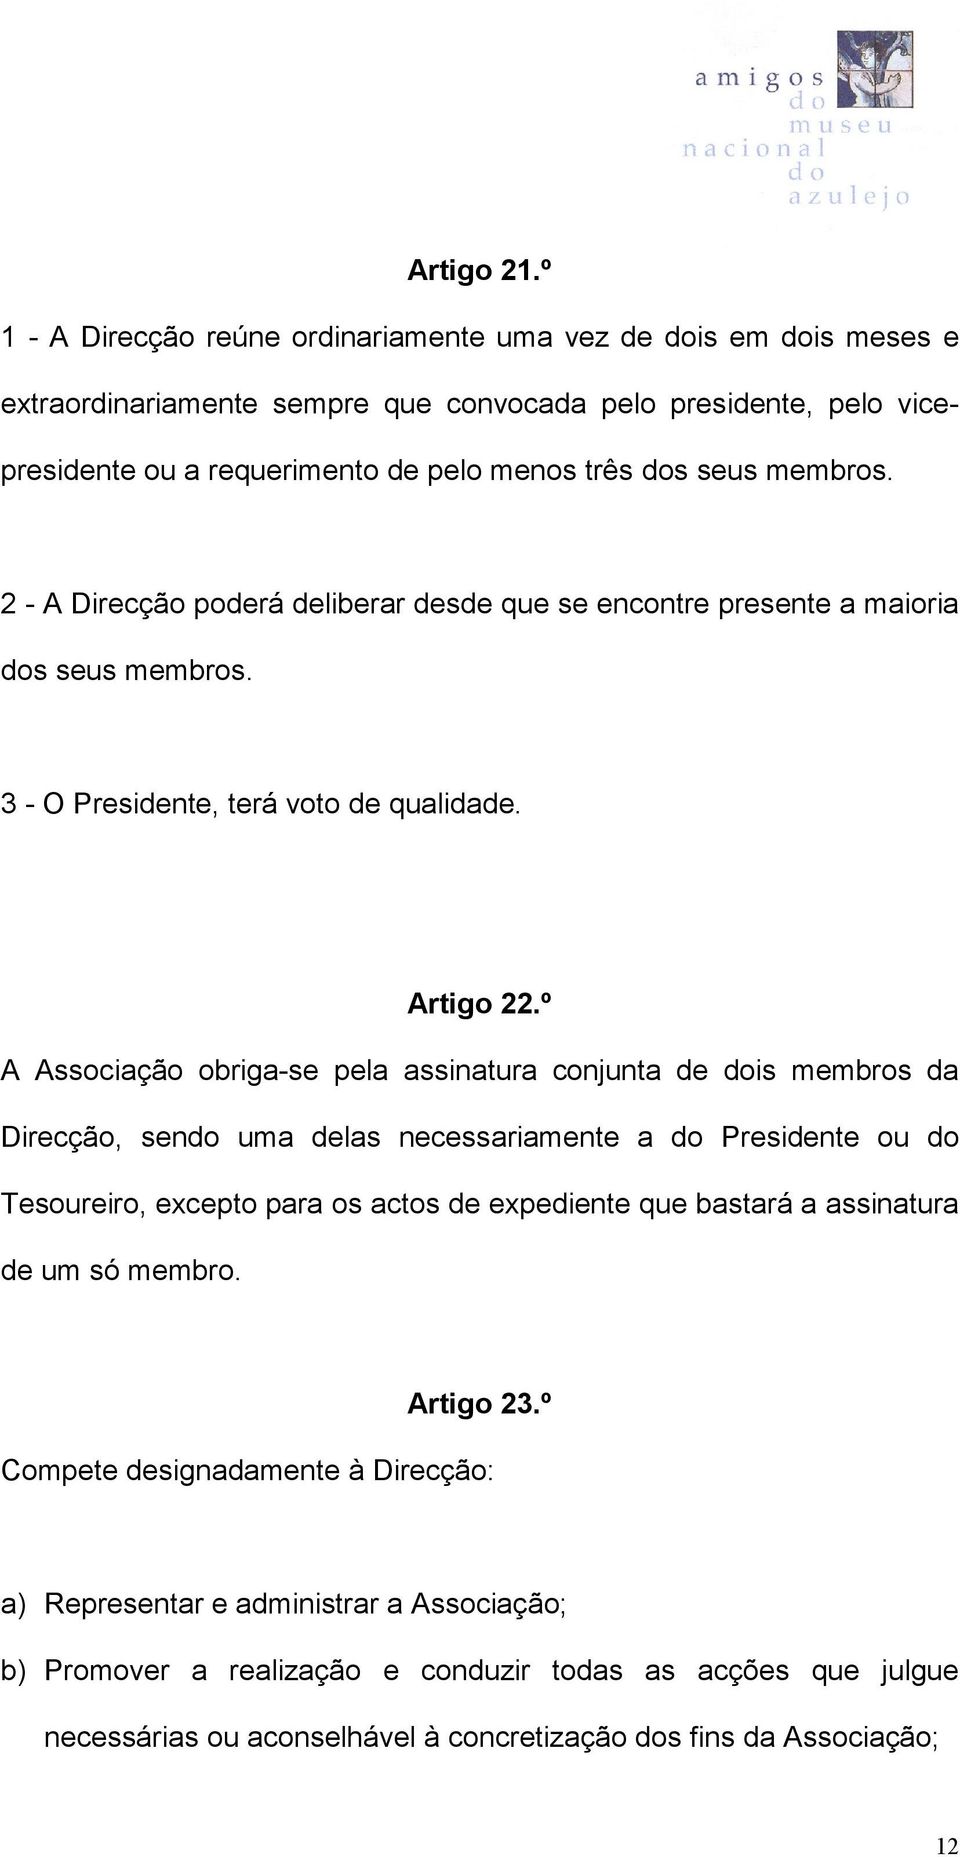 membros. 2 - A Direcção poderá deliberar desde que se encontre presente a maioria dos seus membros. 3 - O Presidente, terá voto de qualidade. Artigo 22.